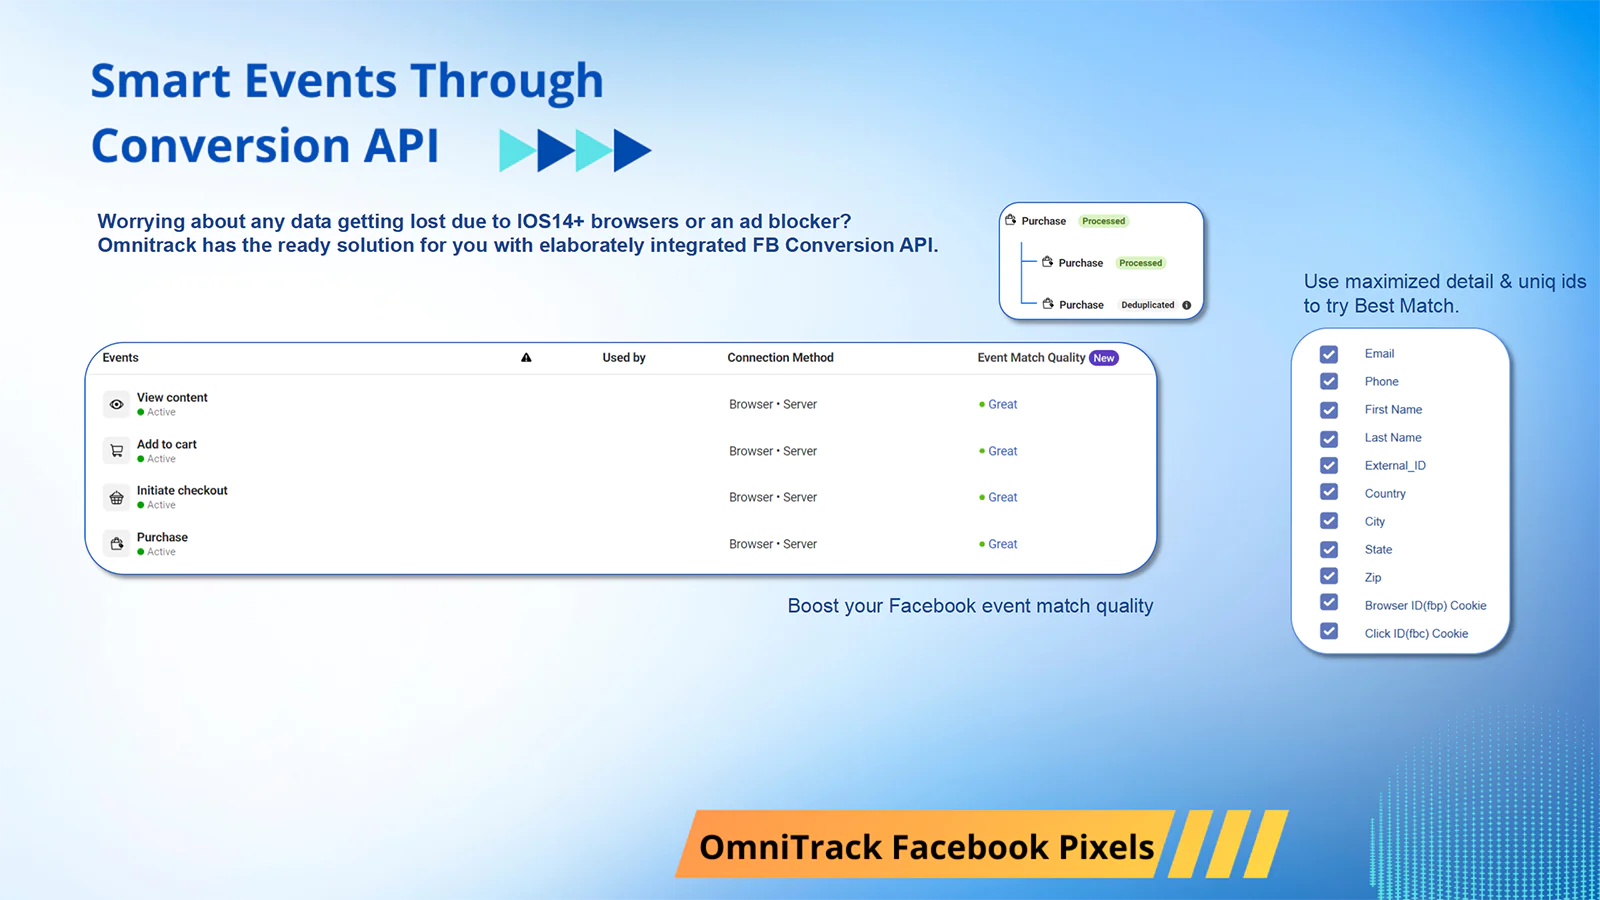 Omnitrack Facebook Pixels smart events through conversion API